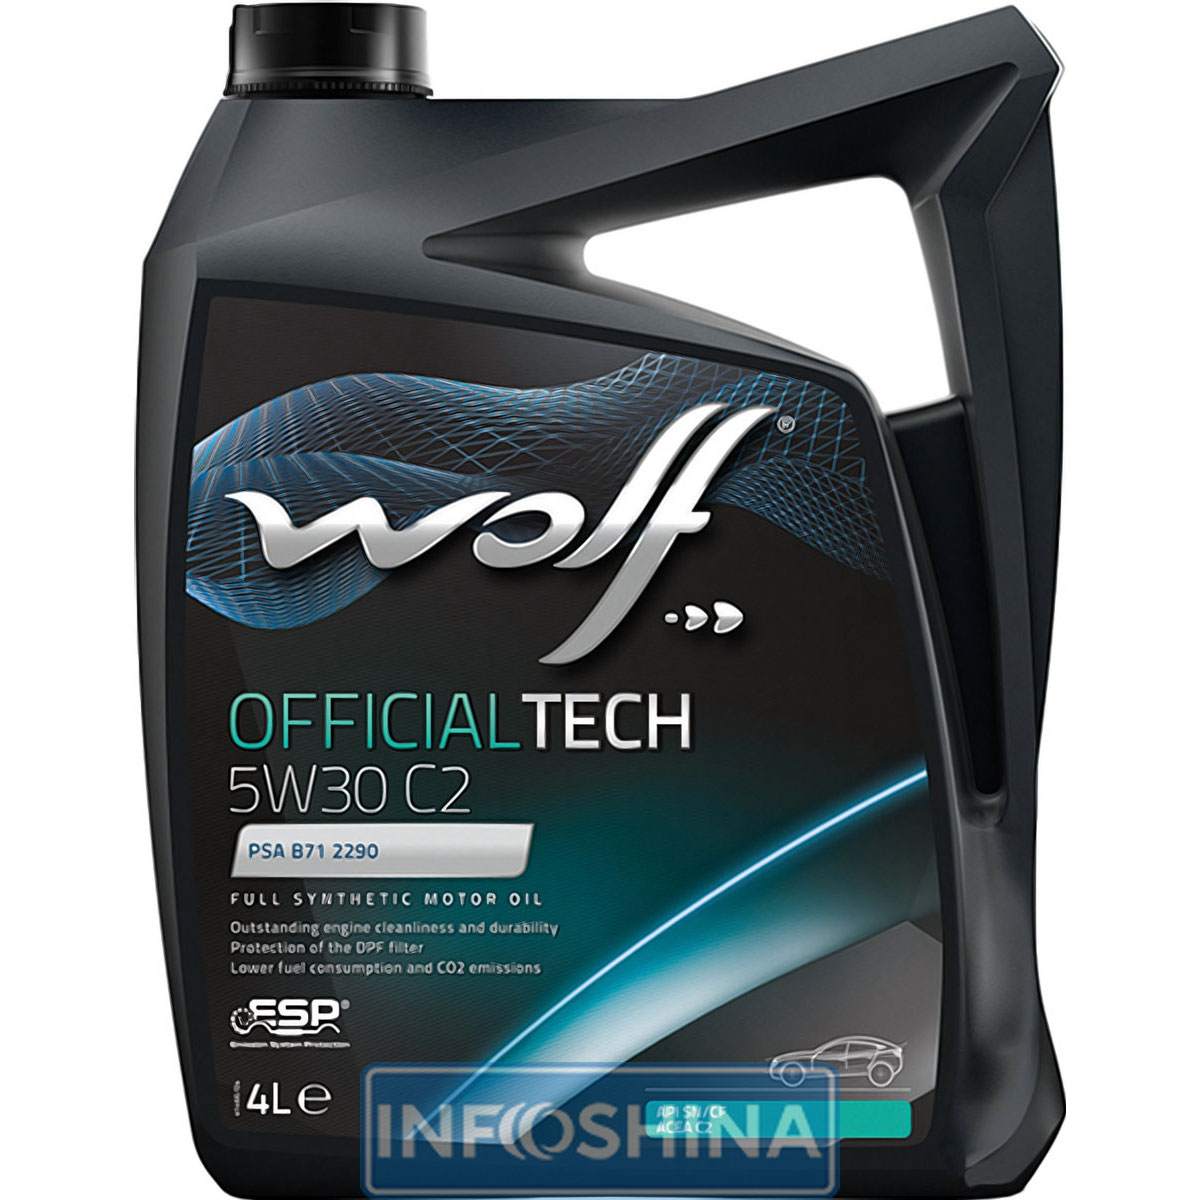 Wolf Officialtech 5W-30 C2